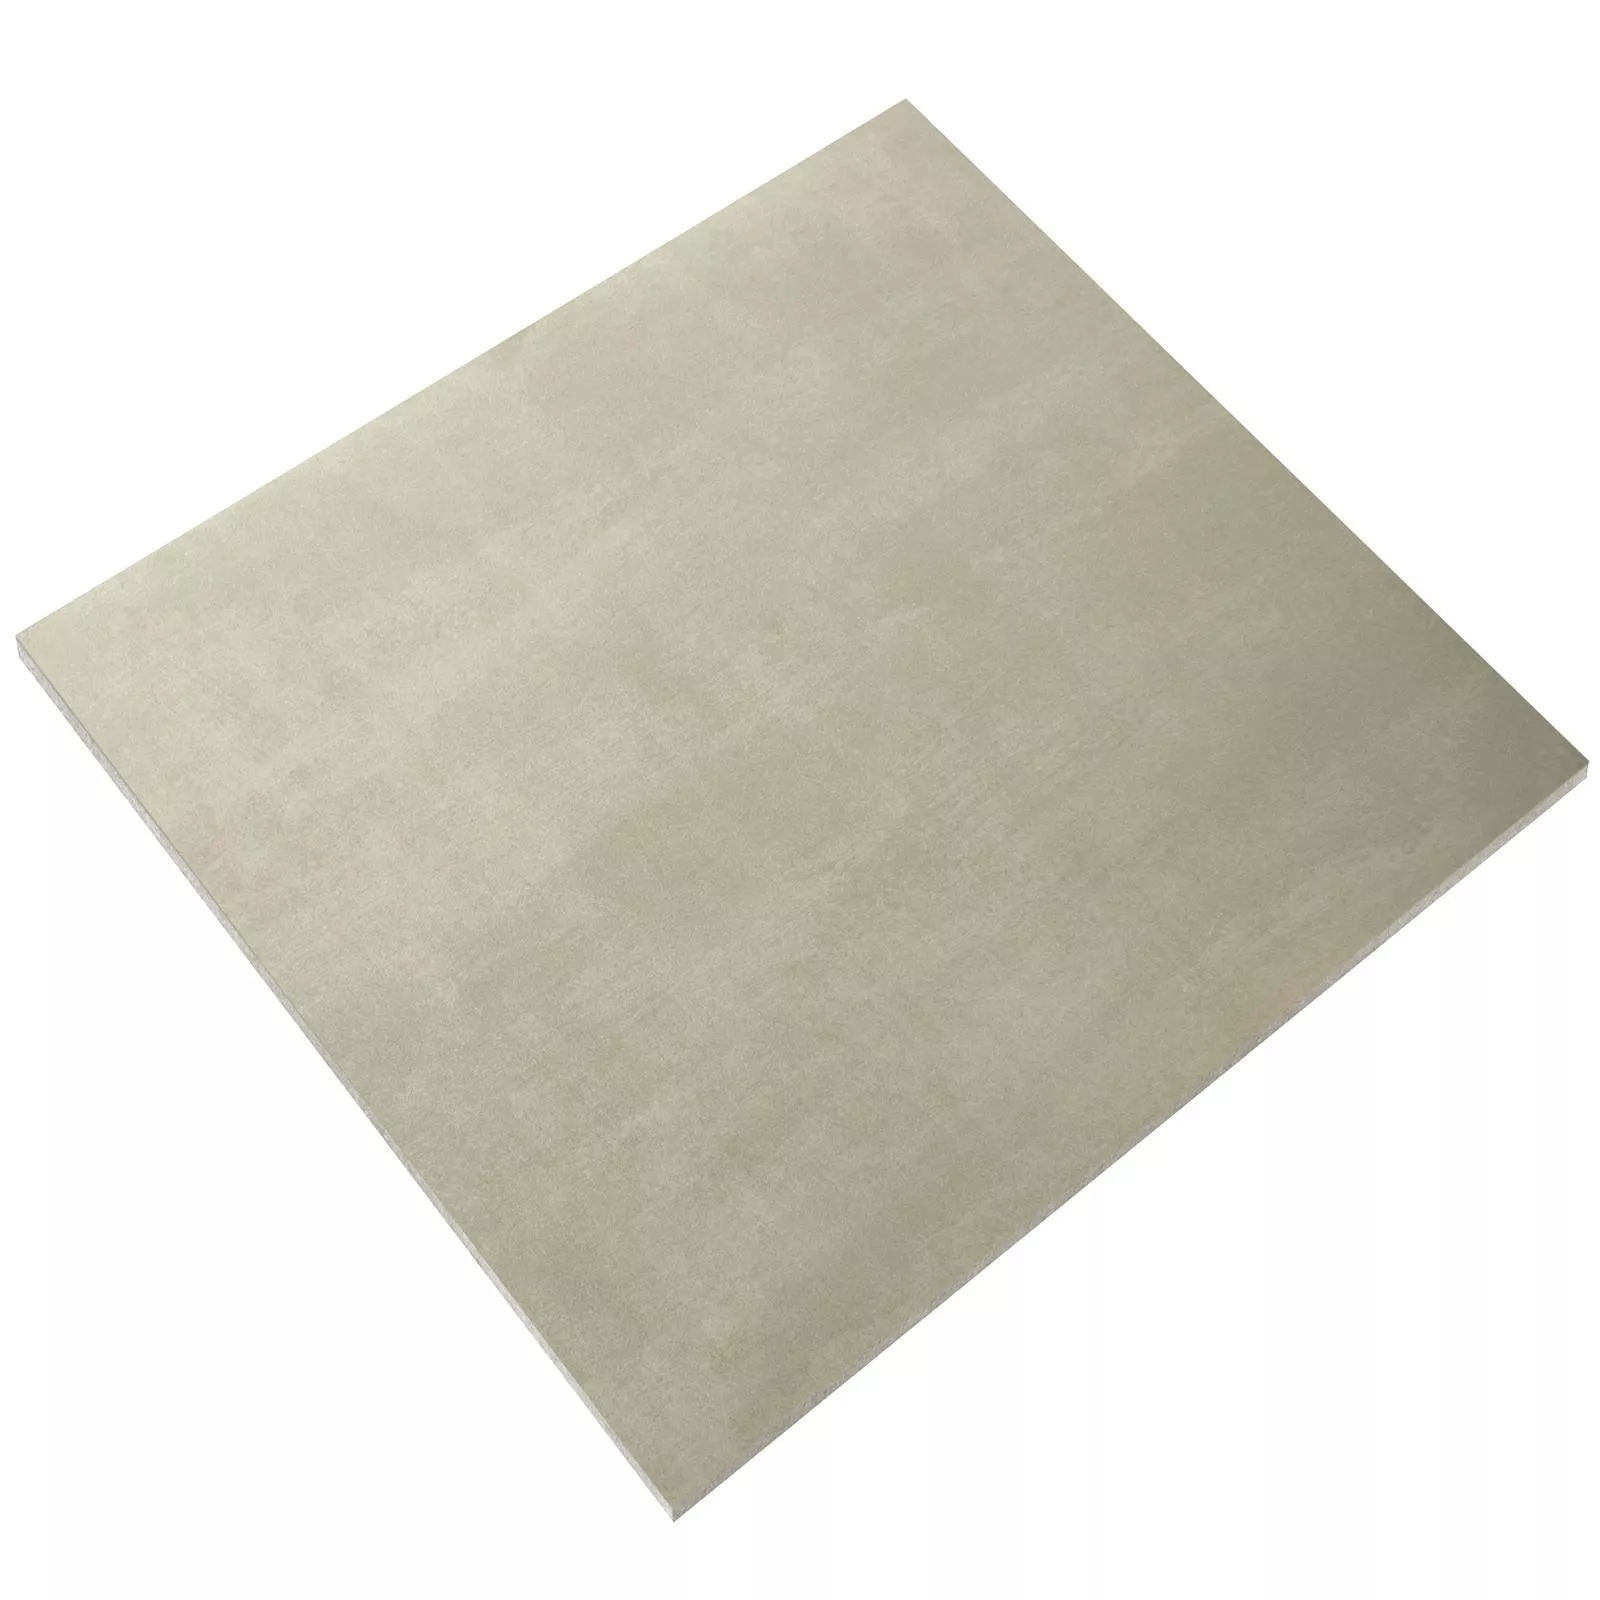 Sample Floor Tiles Beton Optic Noorvik Beige 60x60cm